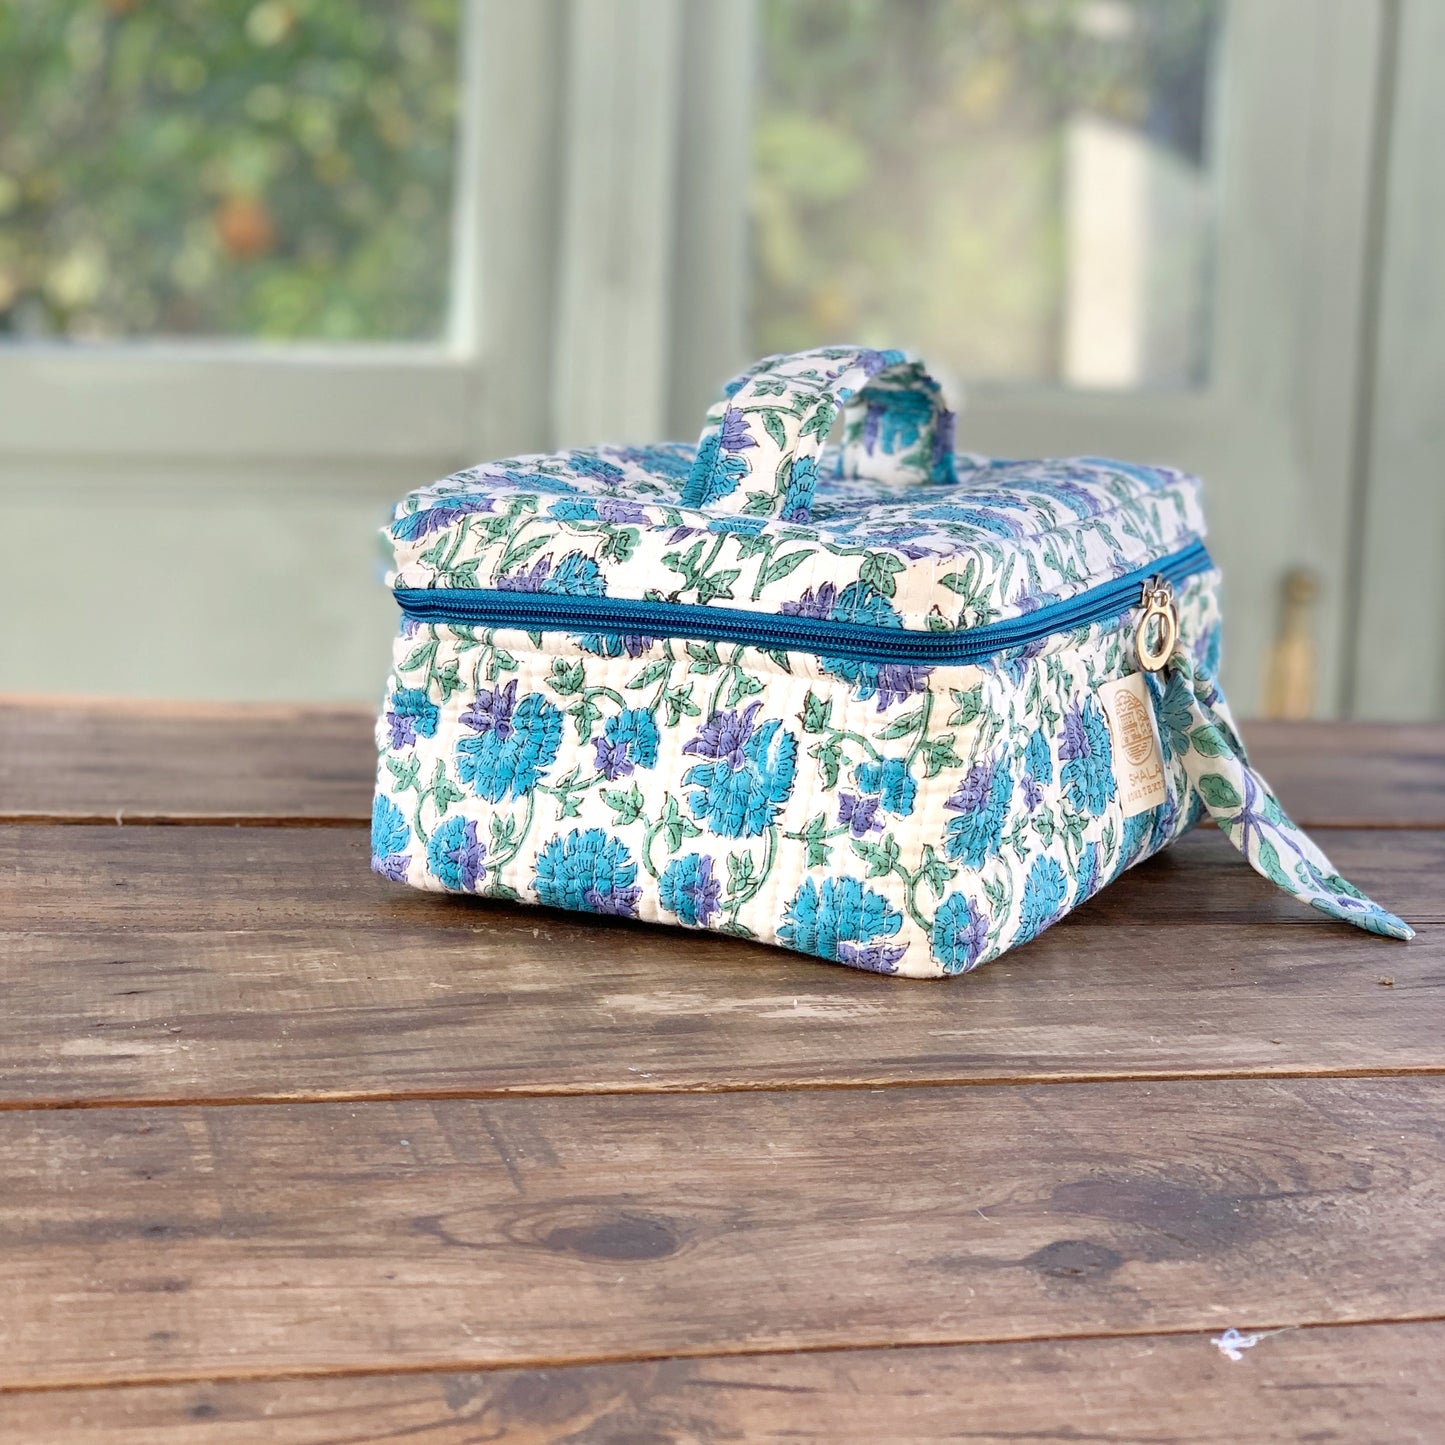 SET regalo baño · Scrunchie coletero, bolsa de aseo & zapatillas a juego · Algodón puro estampado block print en India · Azul mix